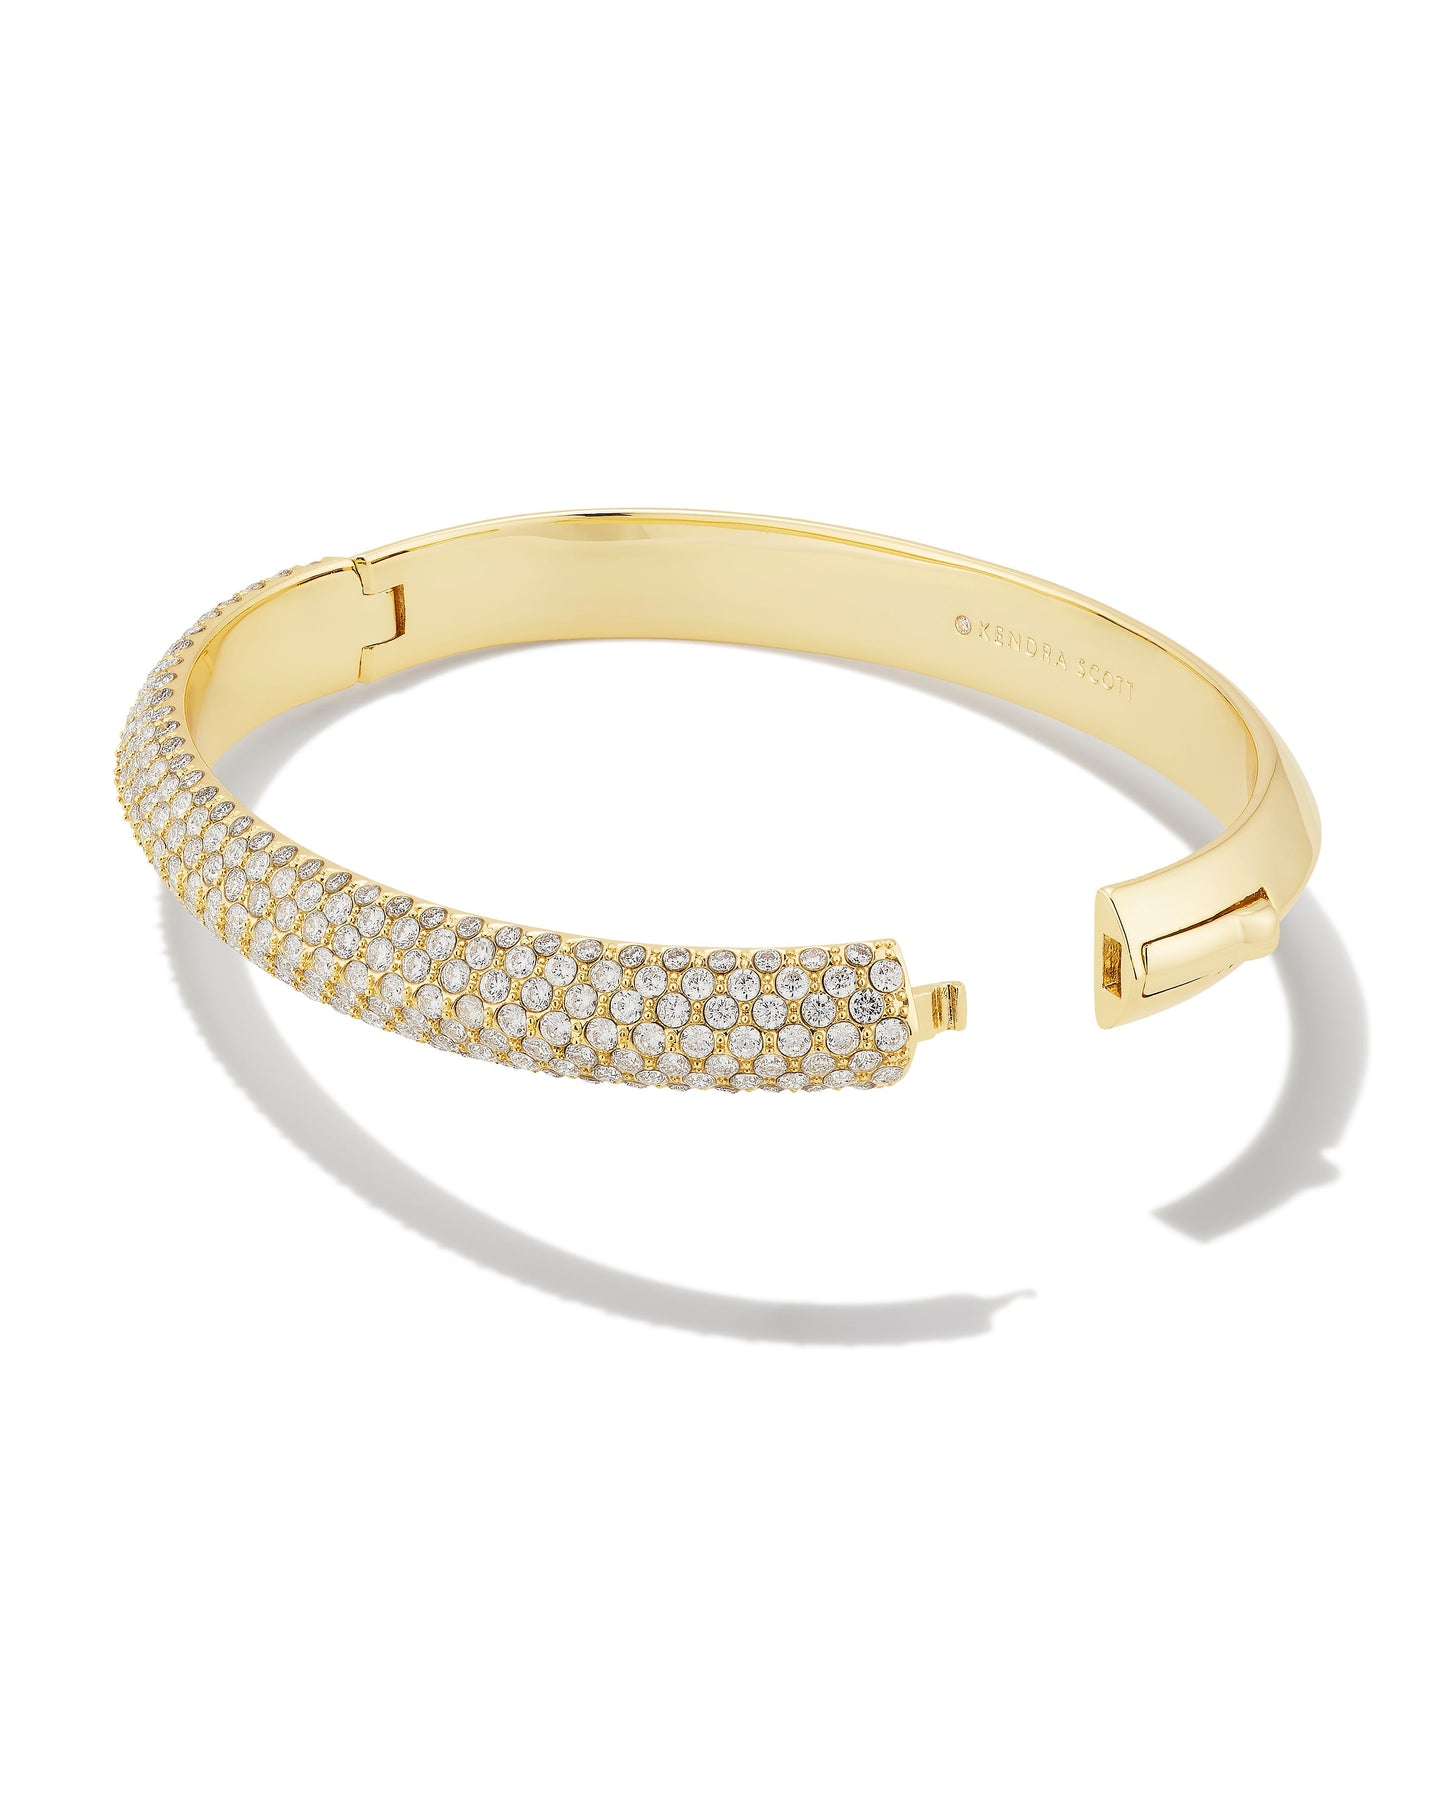 Mikki Gold Pave Bangle Bracelet